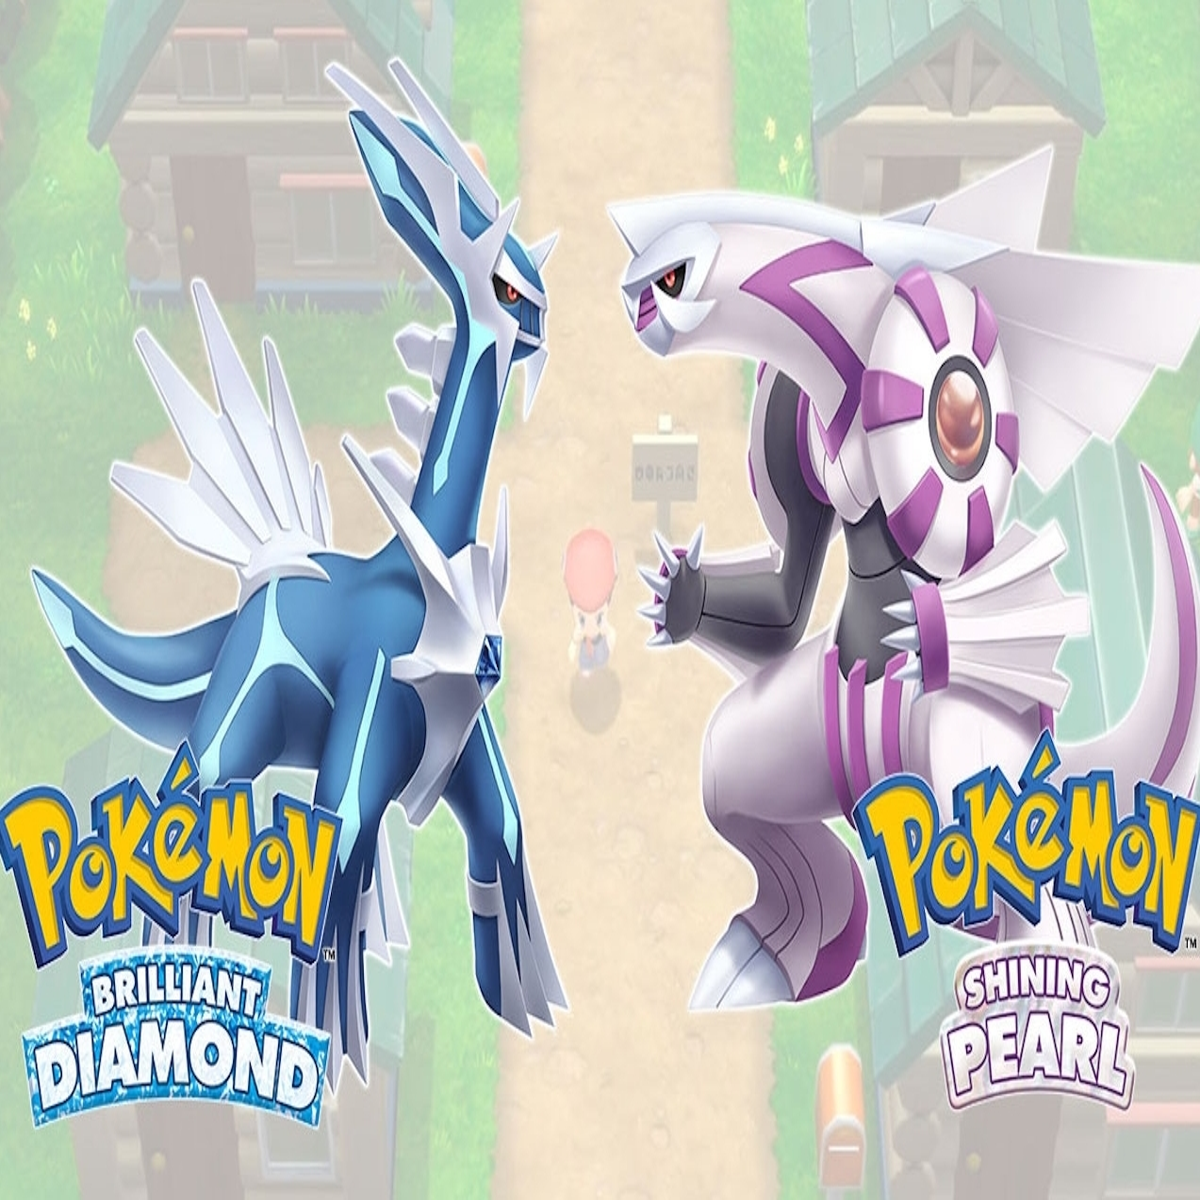 Pokémon Diamond (Detonado - Parte 22) - Captura do Dialga e Reta Final 